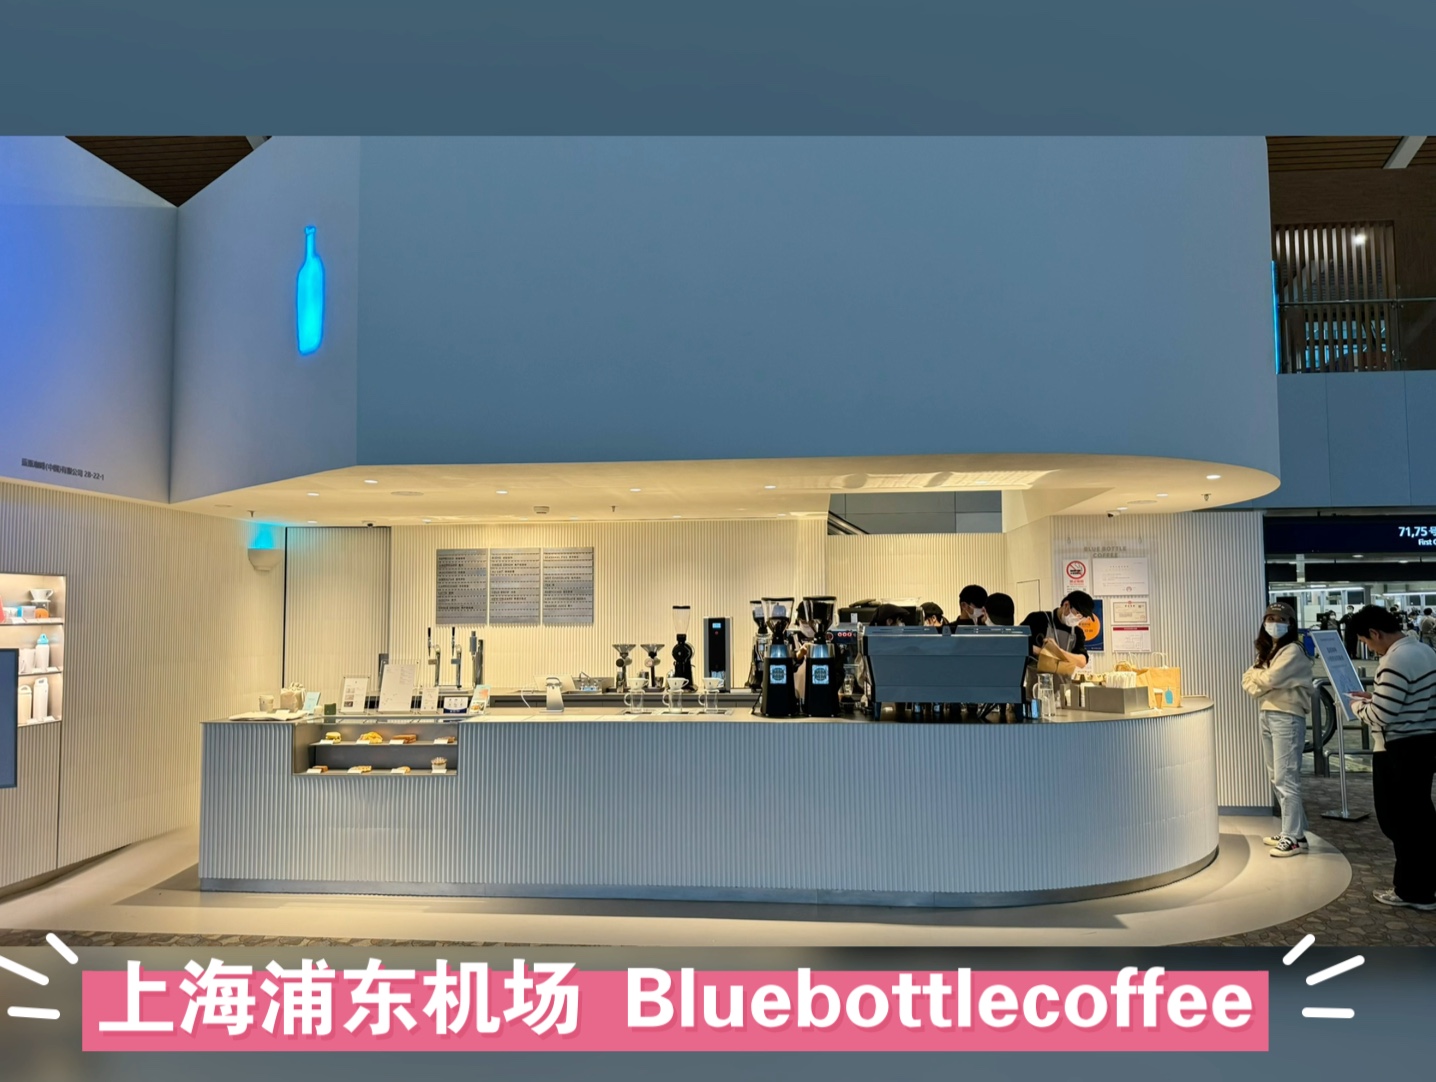 上海浦东机场bluebottlecoffee 打卡